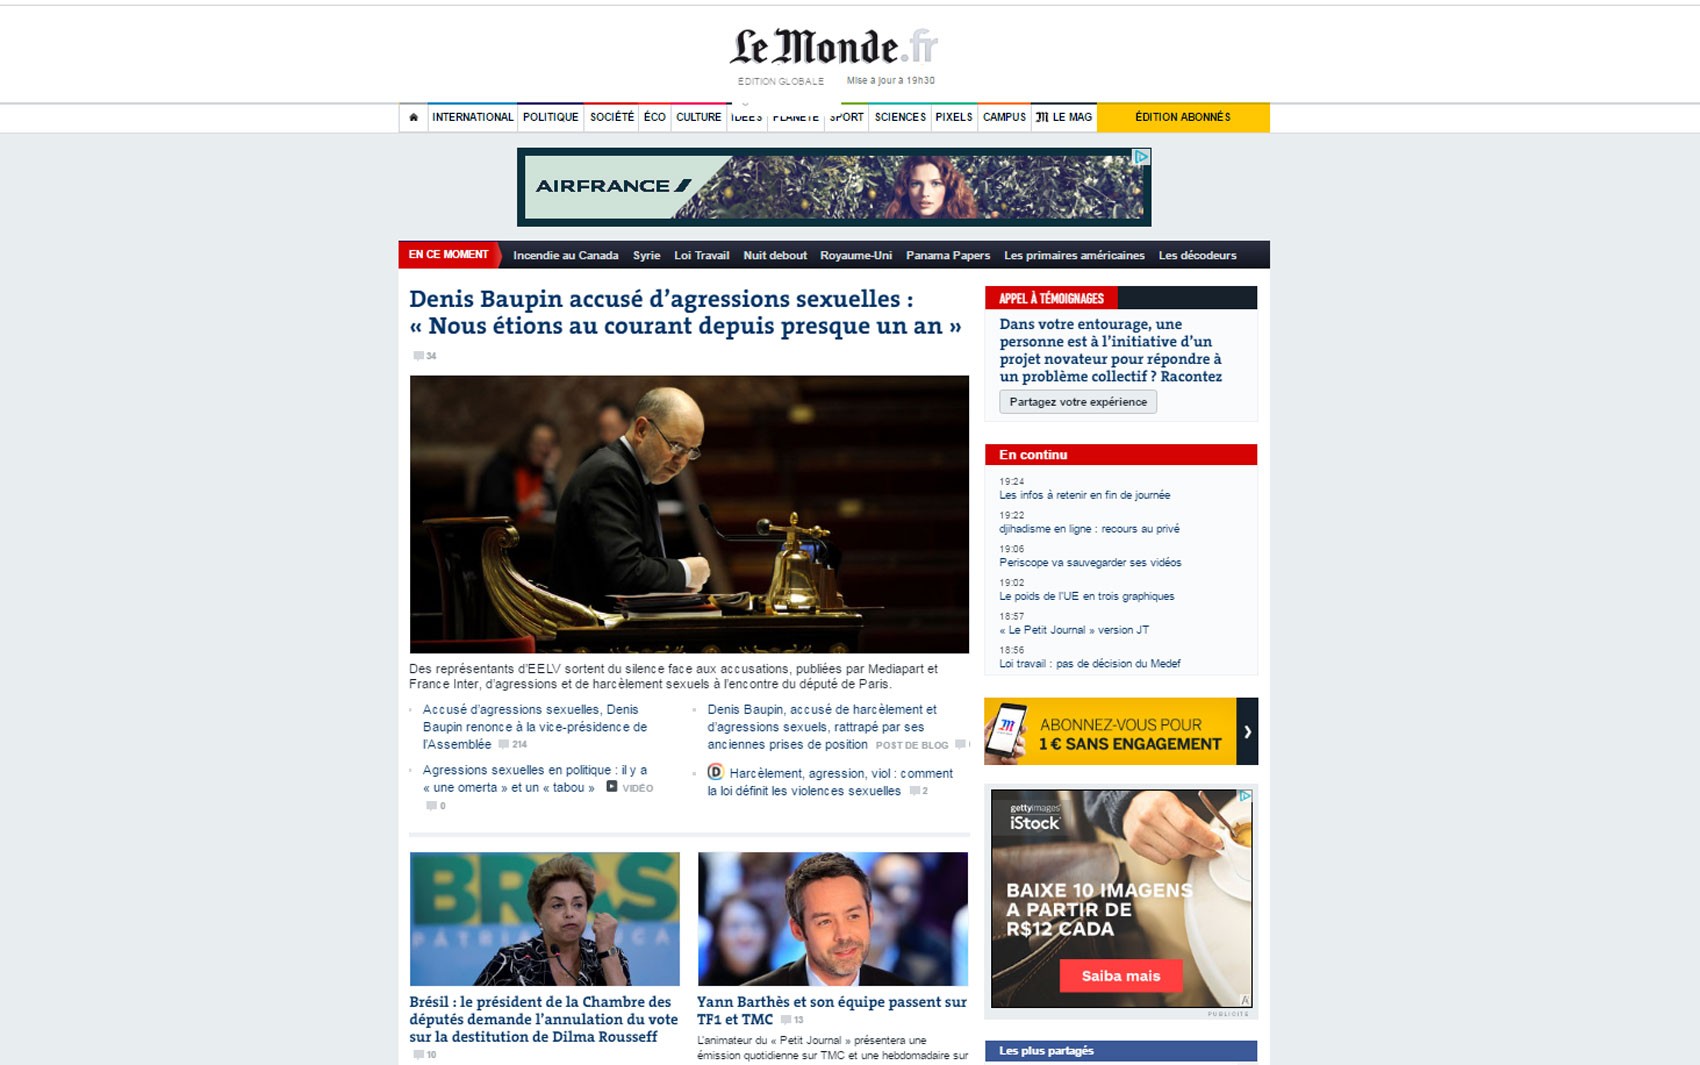 PÃ¡gina inicial do 'Le Monde' destaca notÃ­cia sobre anulaÃ§Ã£o da votaÃ§Ã£o de impeachment na CÃ¢mara (Foto: ReproduÃ§Ã£o/Le Monde)